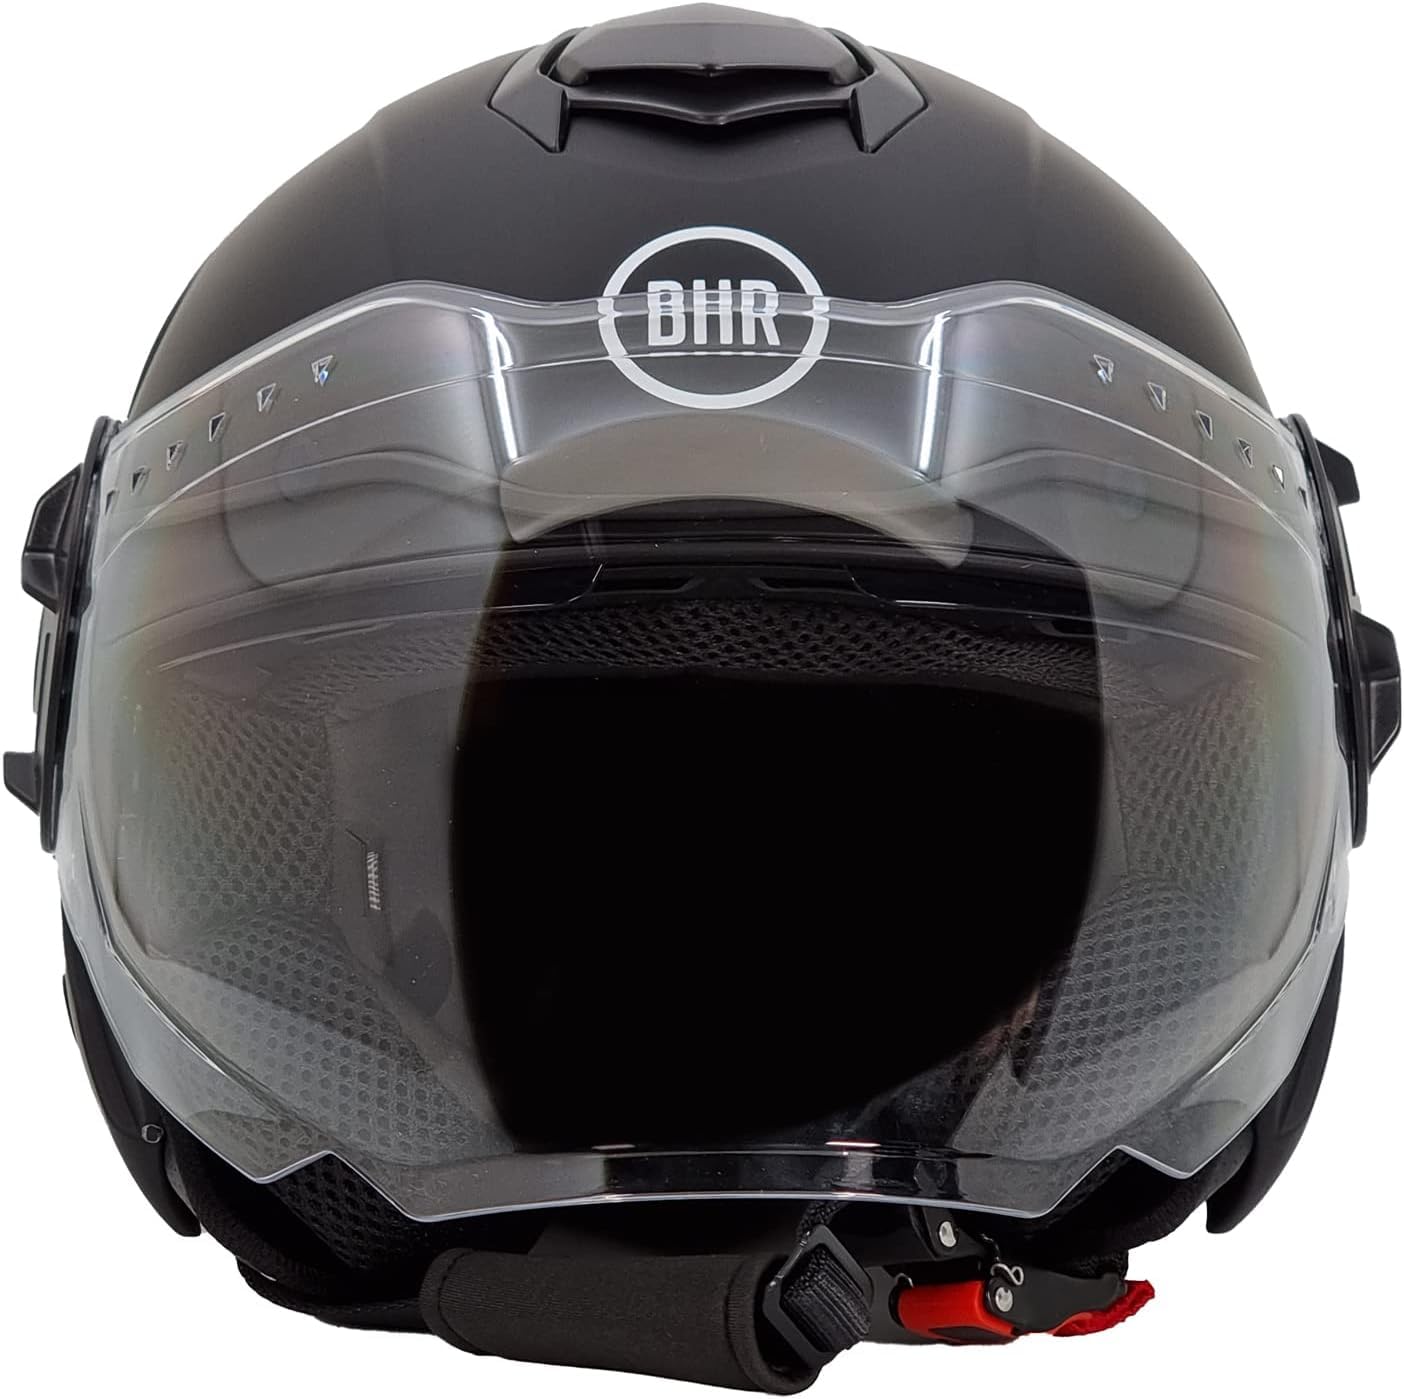 BHR Jet Helm Double Visor 830 FLASH, Scooter Helm mit ECE 22.06 Zulassung, Leichter & komfortabler Jet Helm mit innenliegender Sonnenblende, Mattschwarz, L